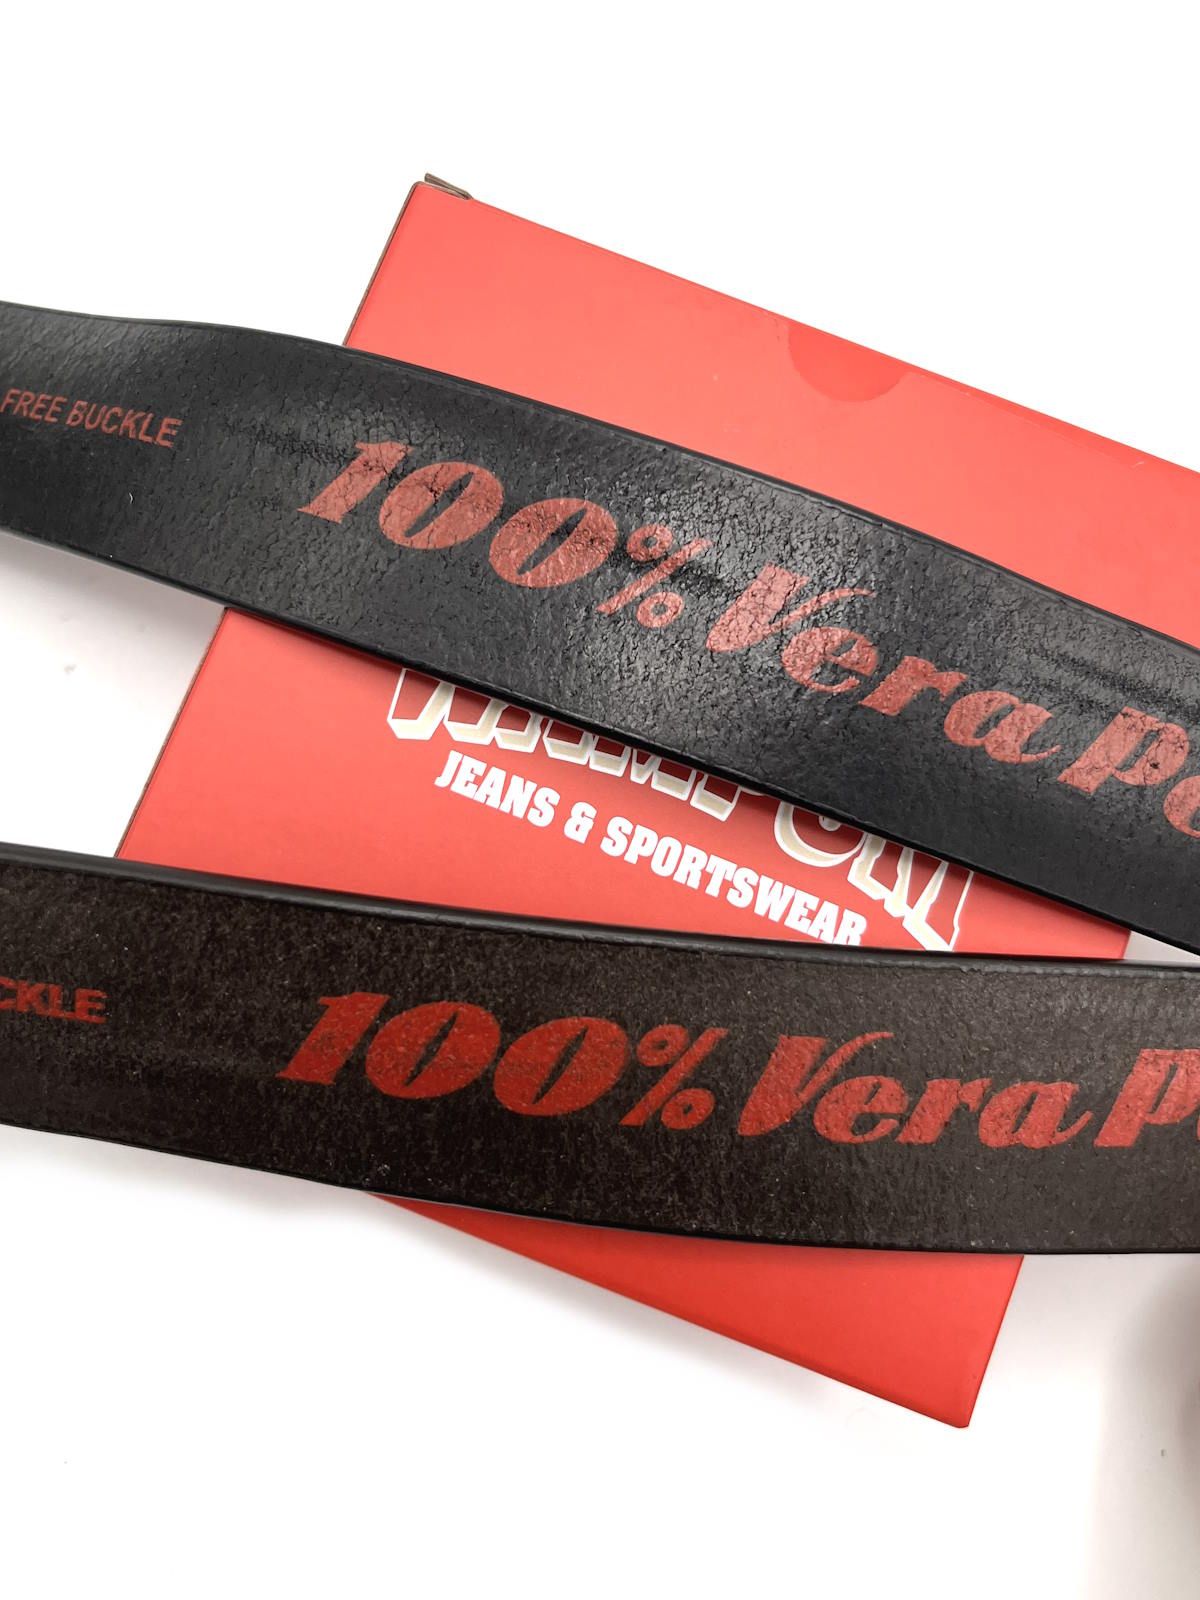 Genuine leather belt, Brand Wampum, art. DK481/35